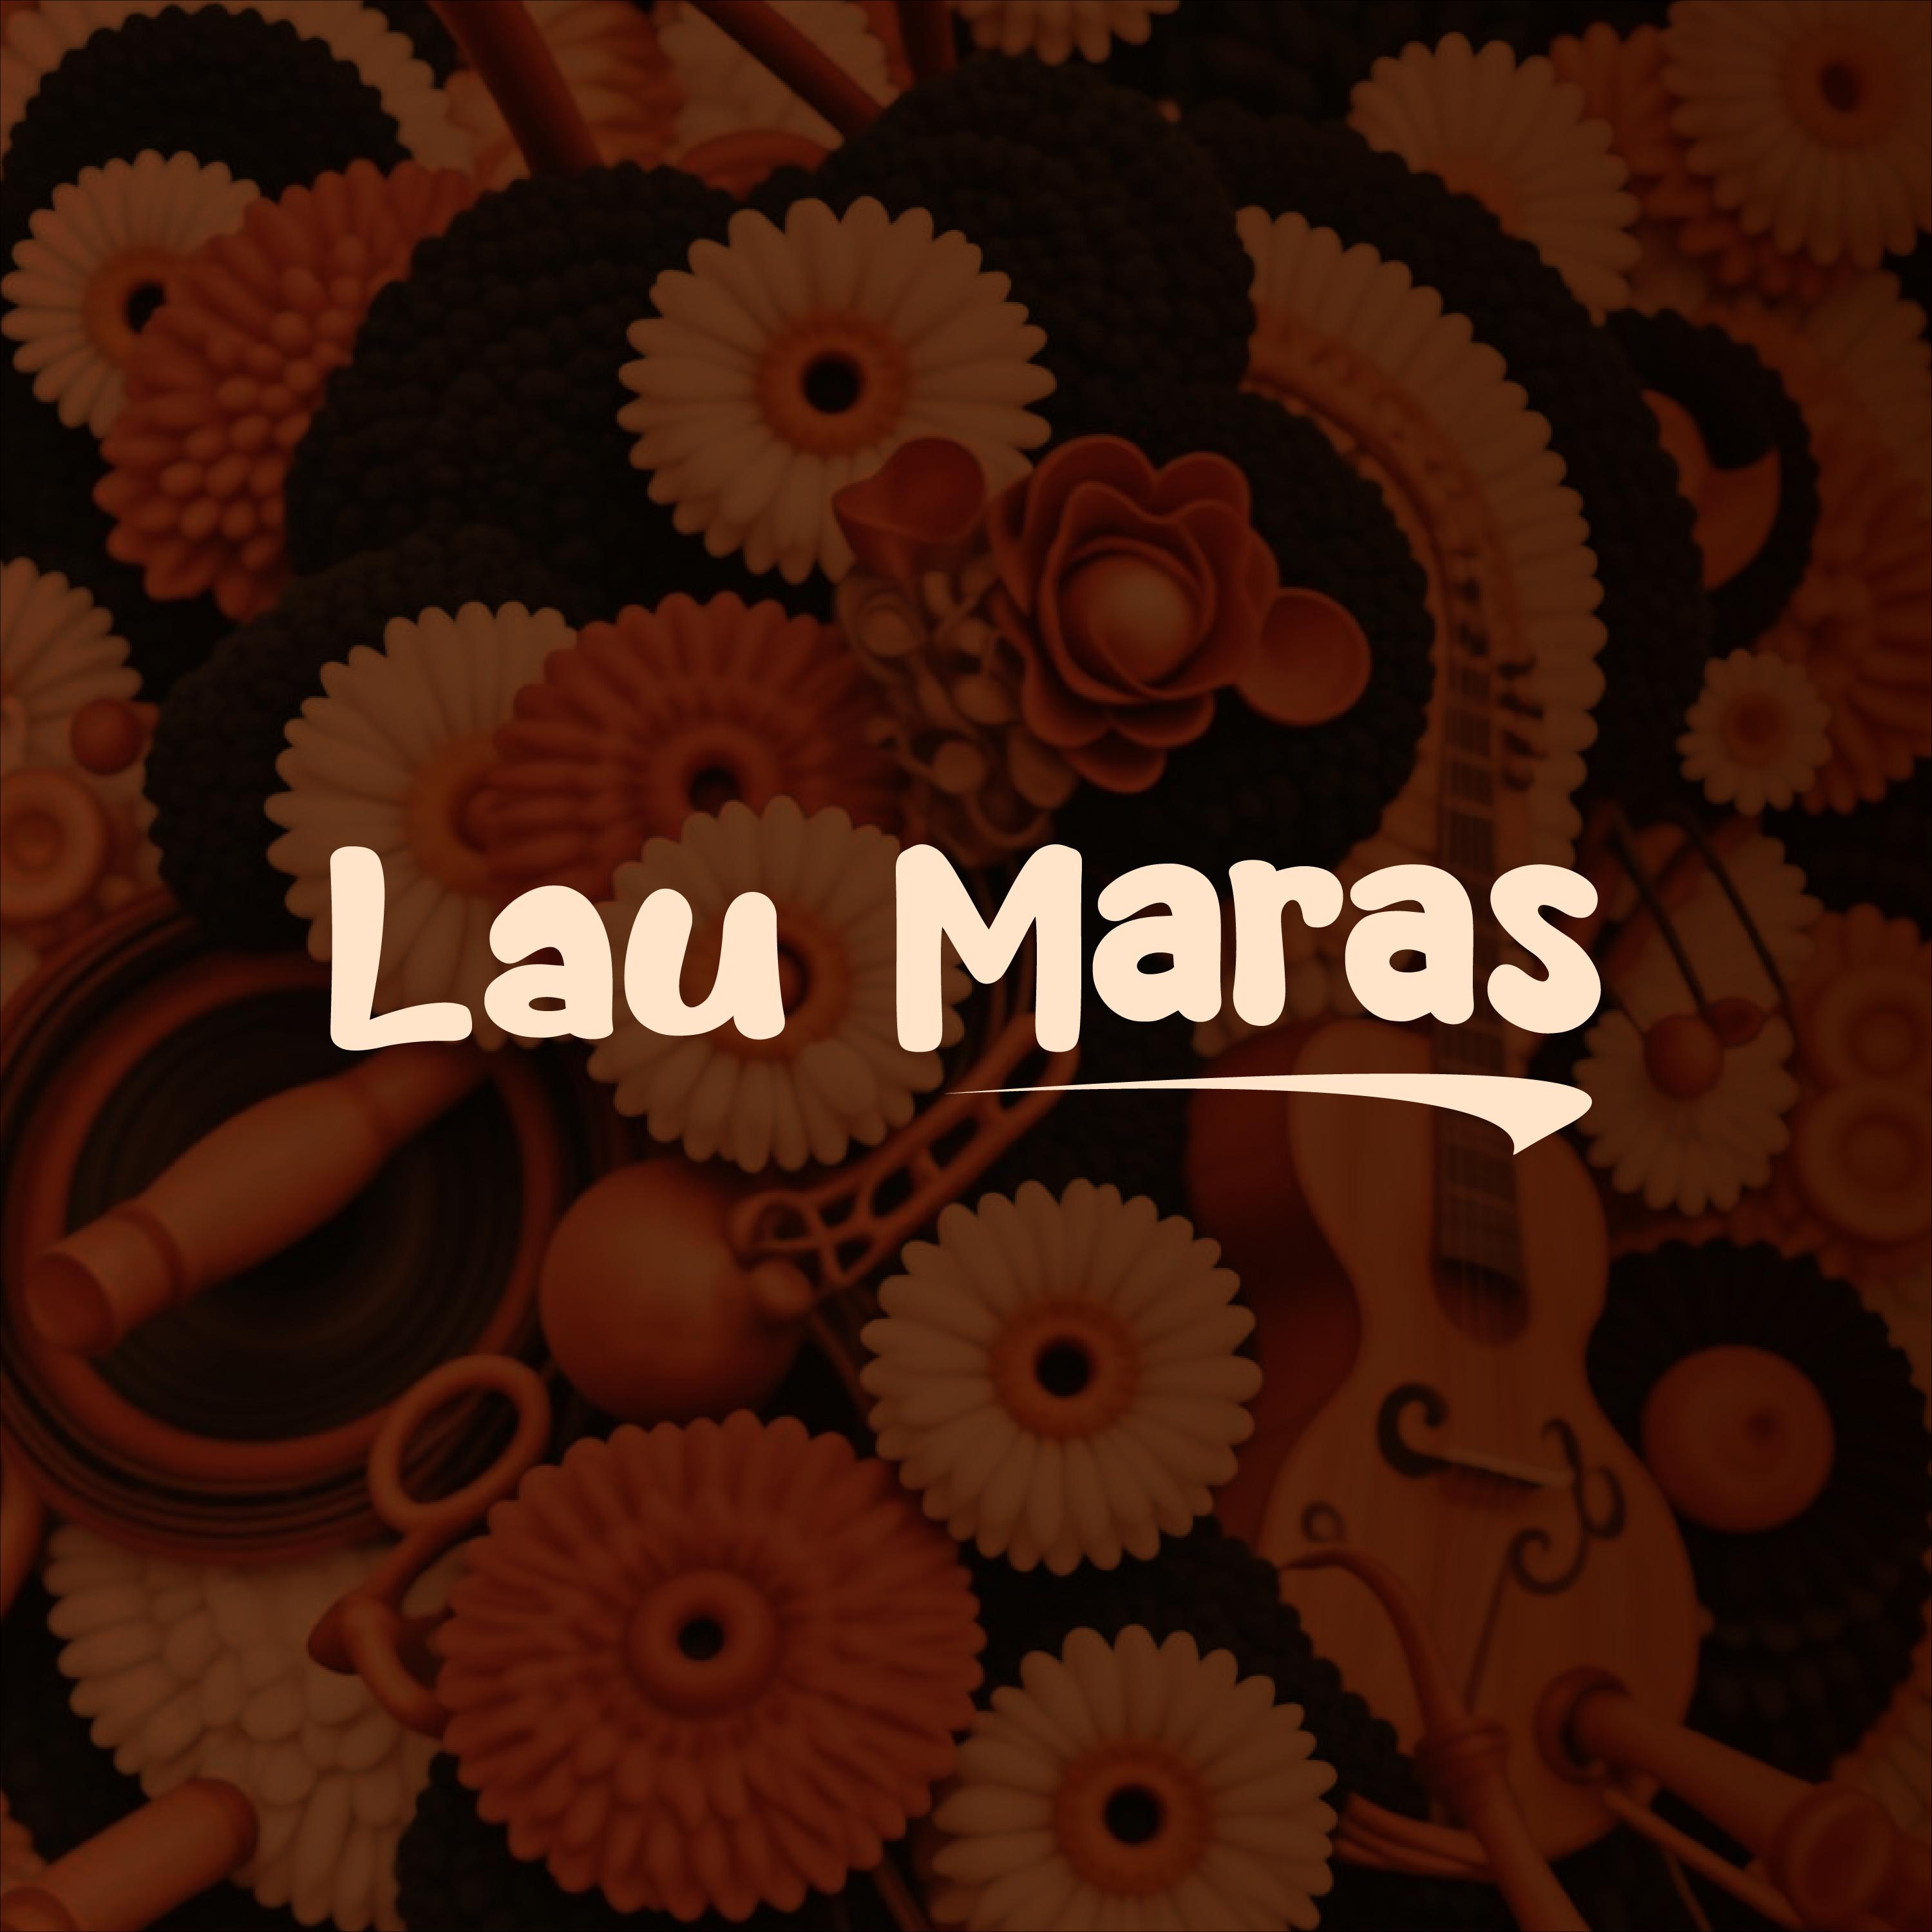 Lau Maras - Reverde Ser (Cover)